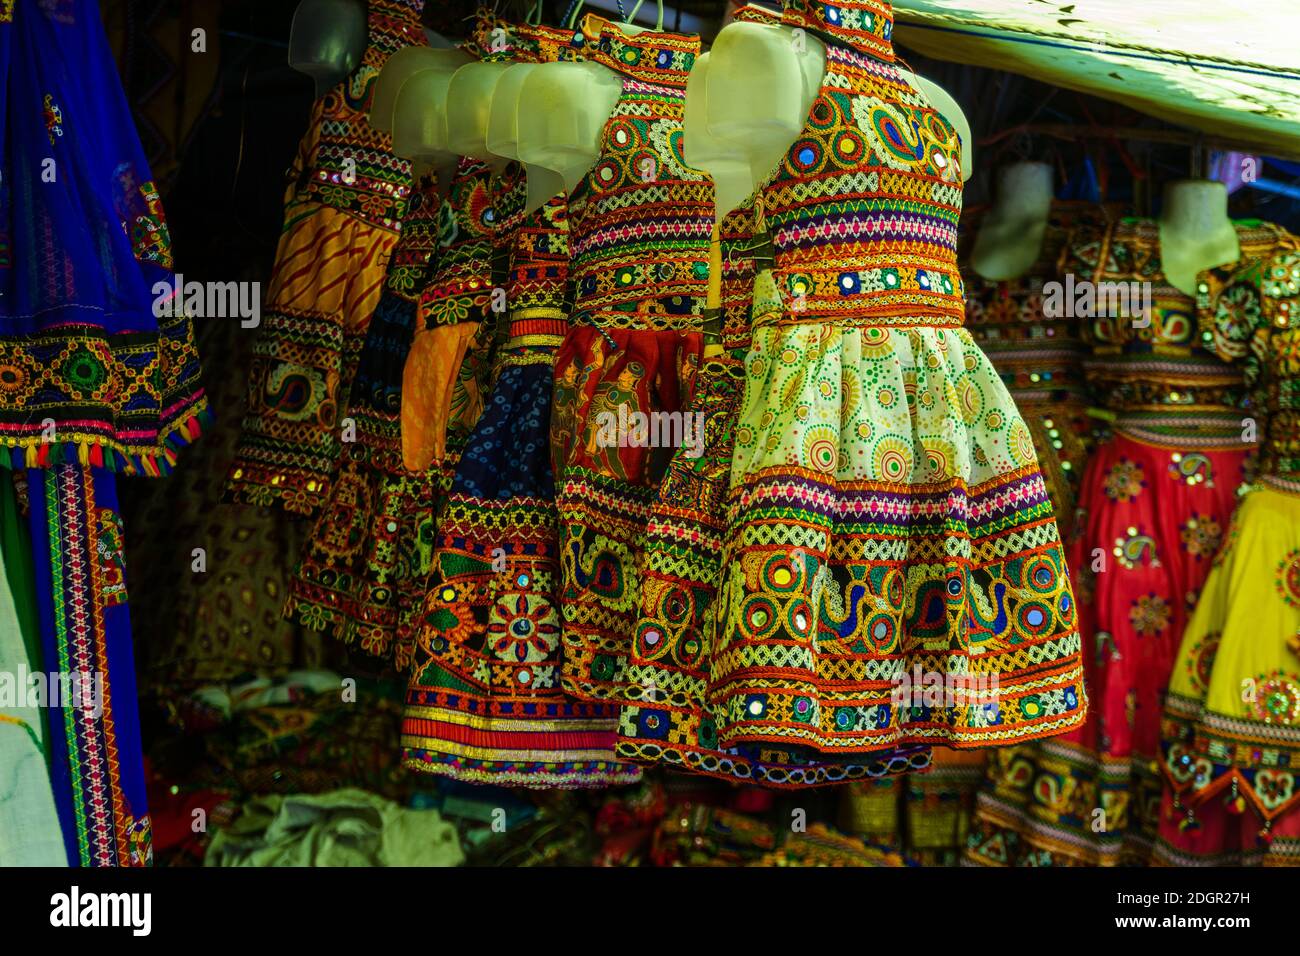 Una bancarella di abiti tradizionali colorati per bambini alla mostra d'arte e artigianato a Shilparamam, Hyderabad, Telangana, India Foto Stock